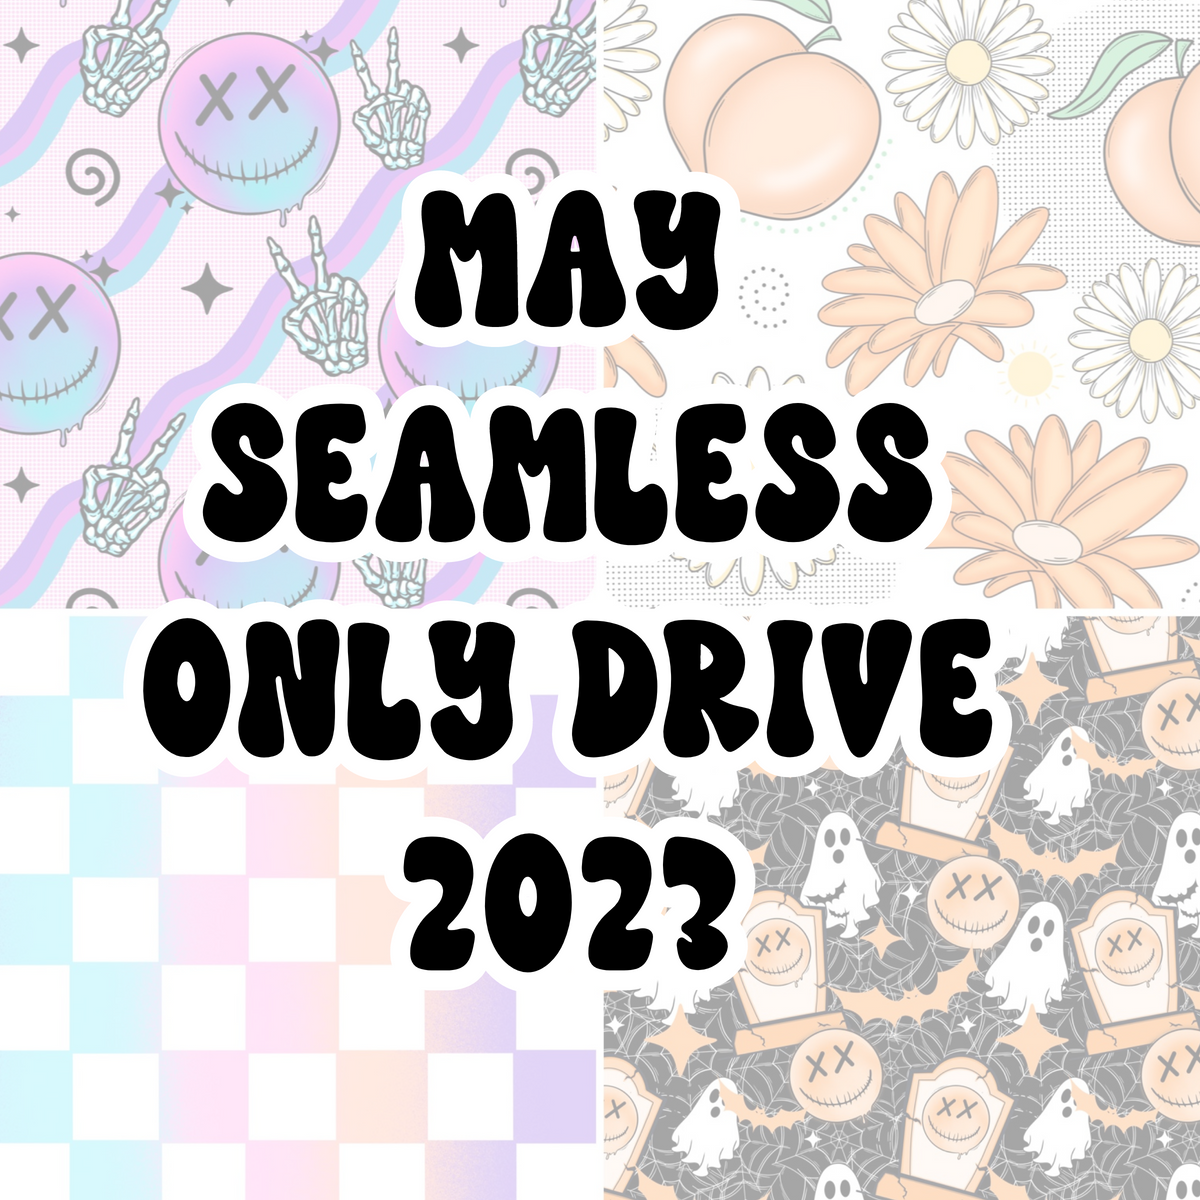 MAY 2023 SEAMLESS FILE DRIVE